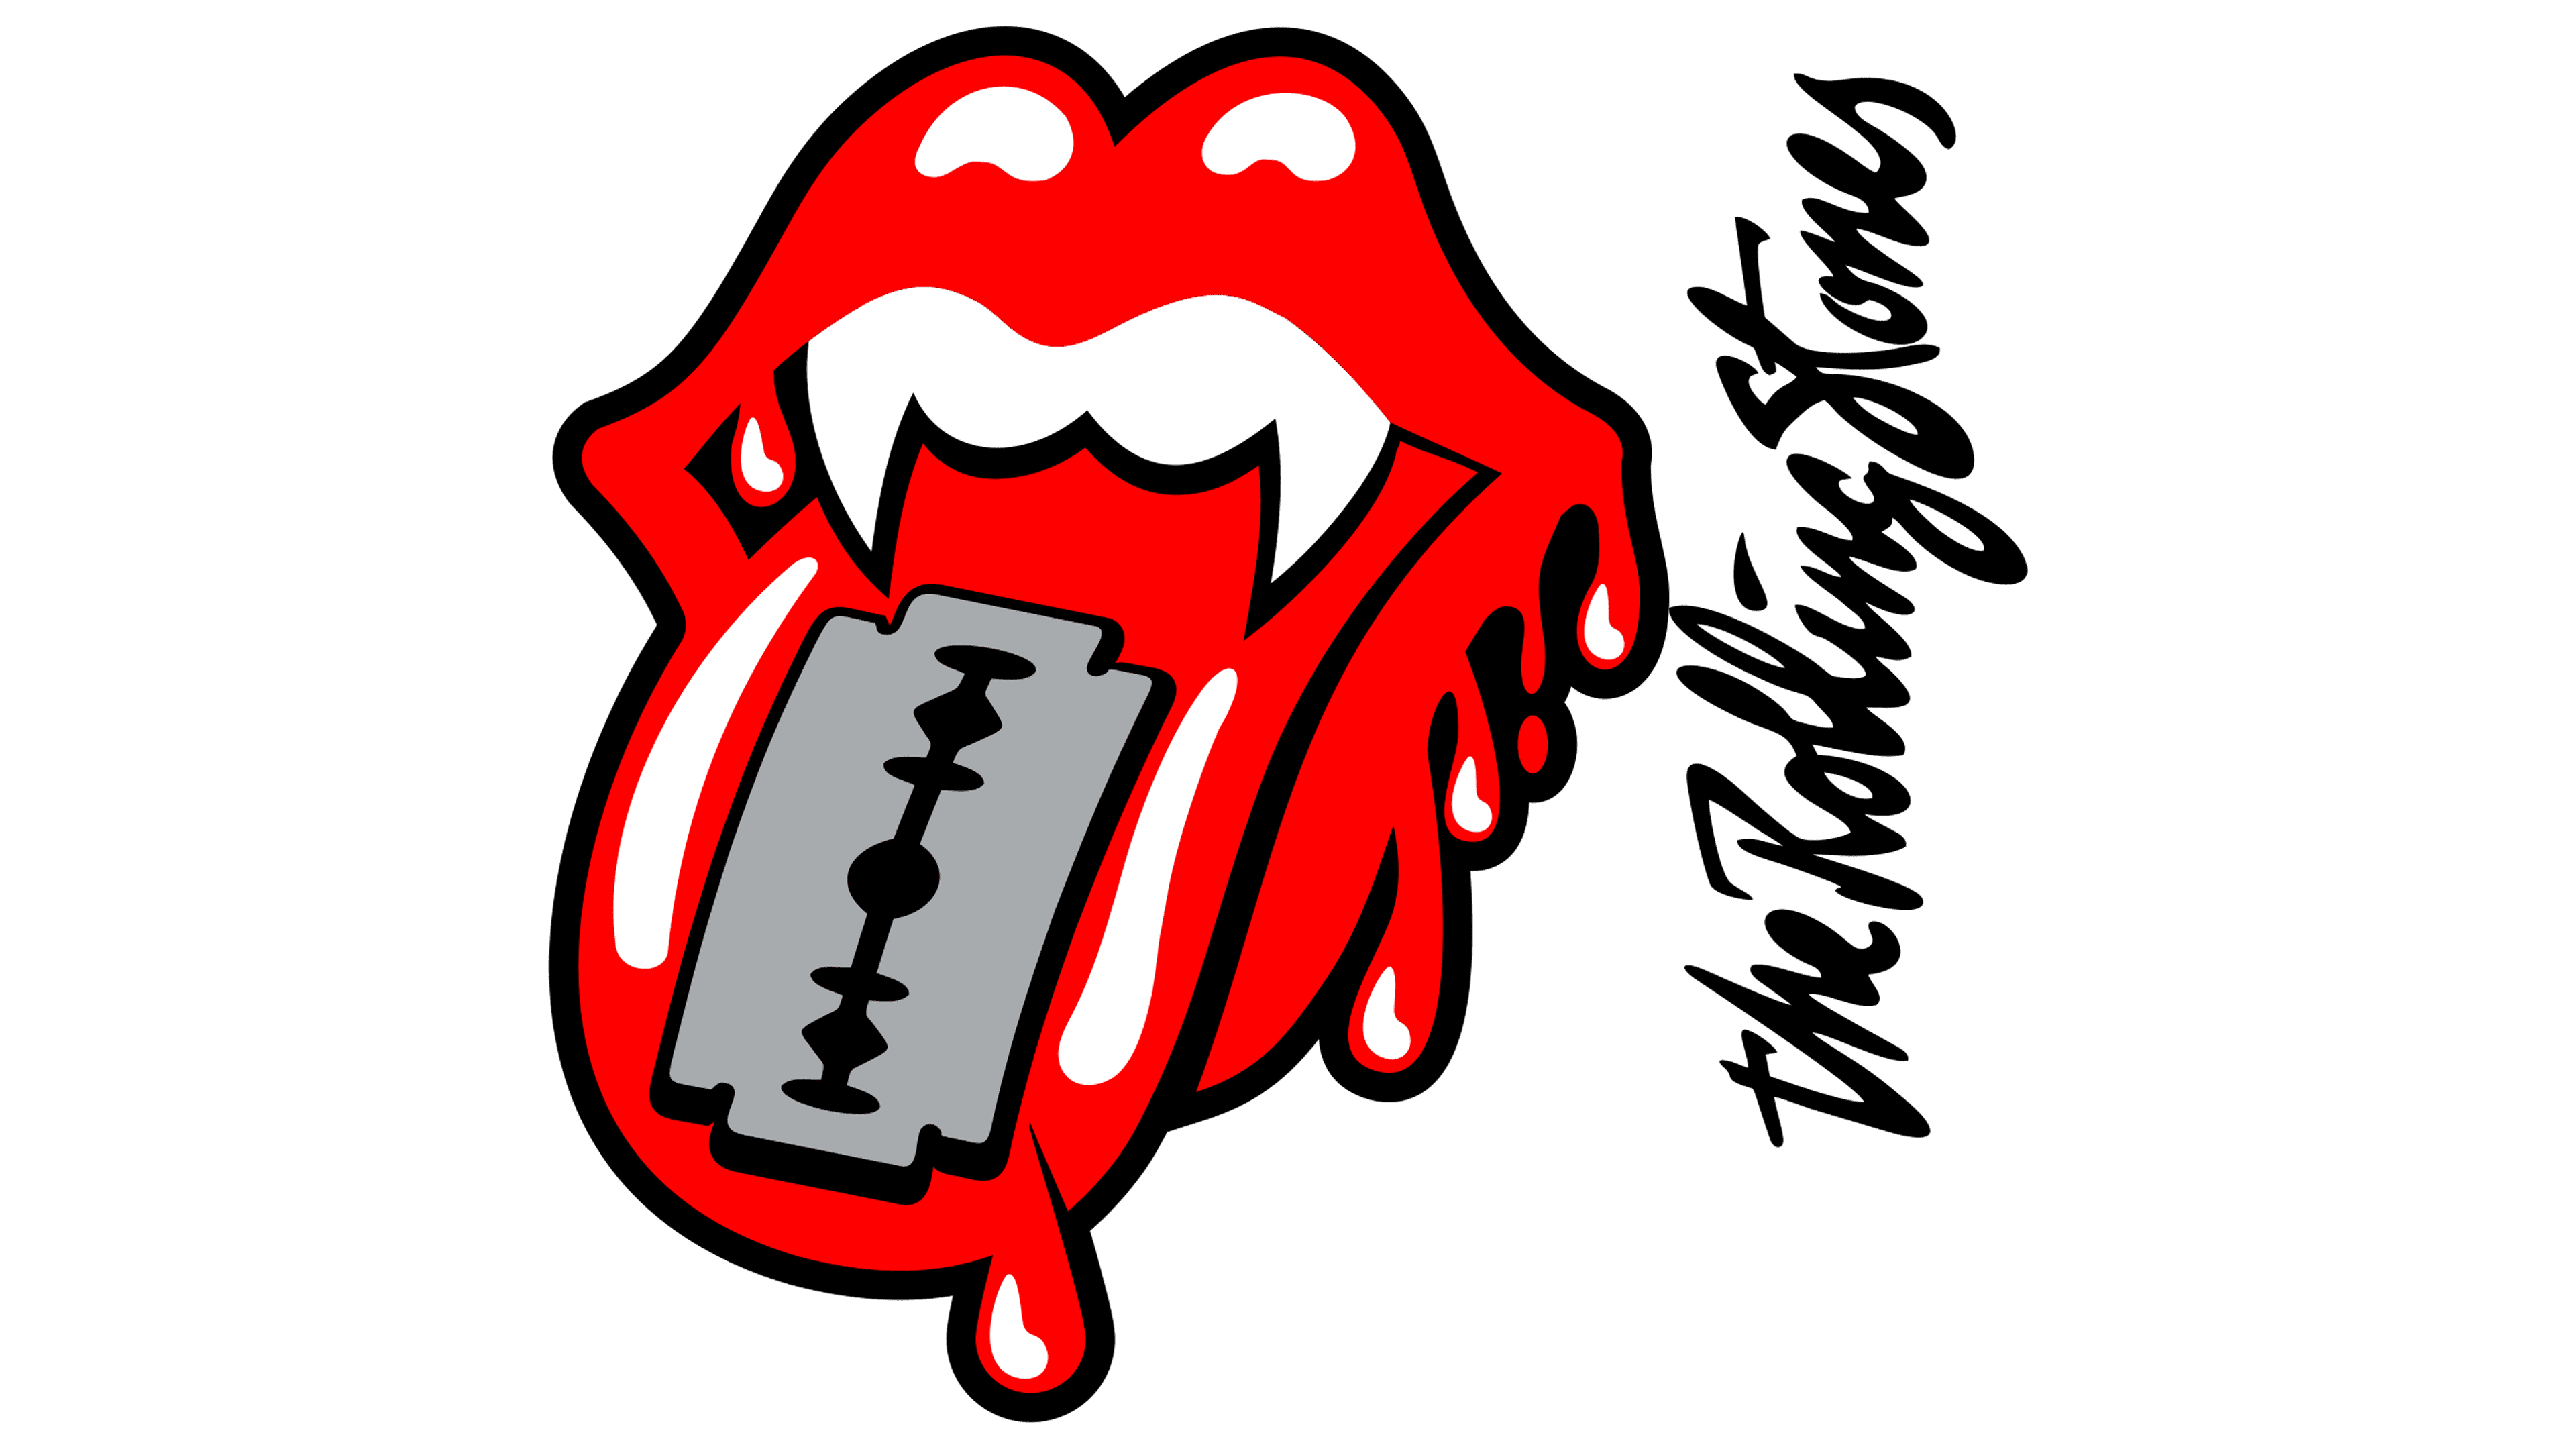 Le logo Rolling Stones n’a pas d’inscriptions